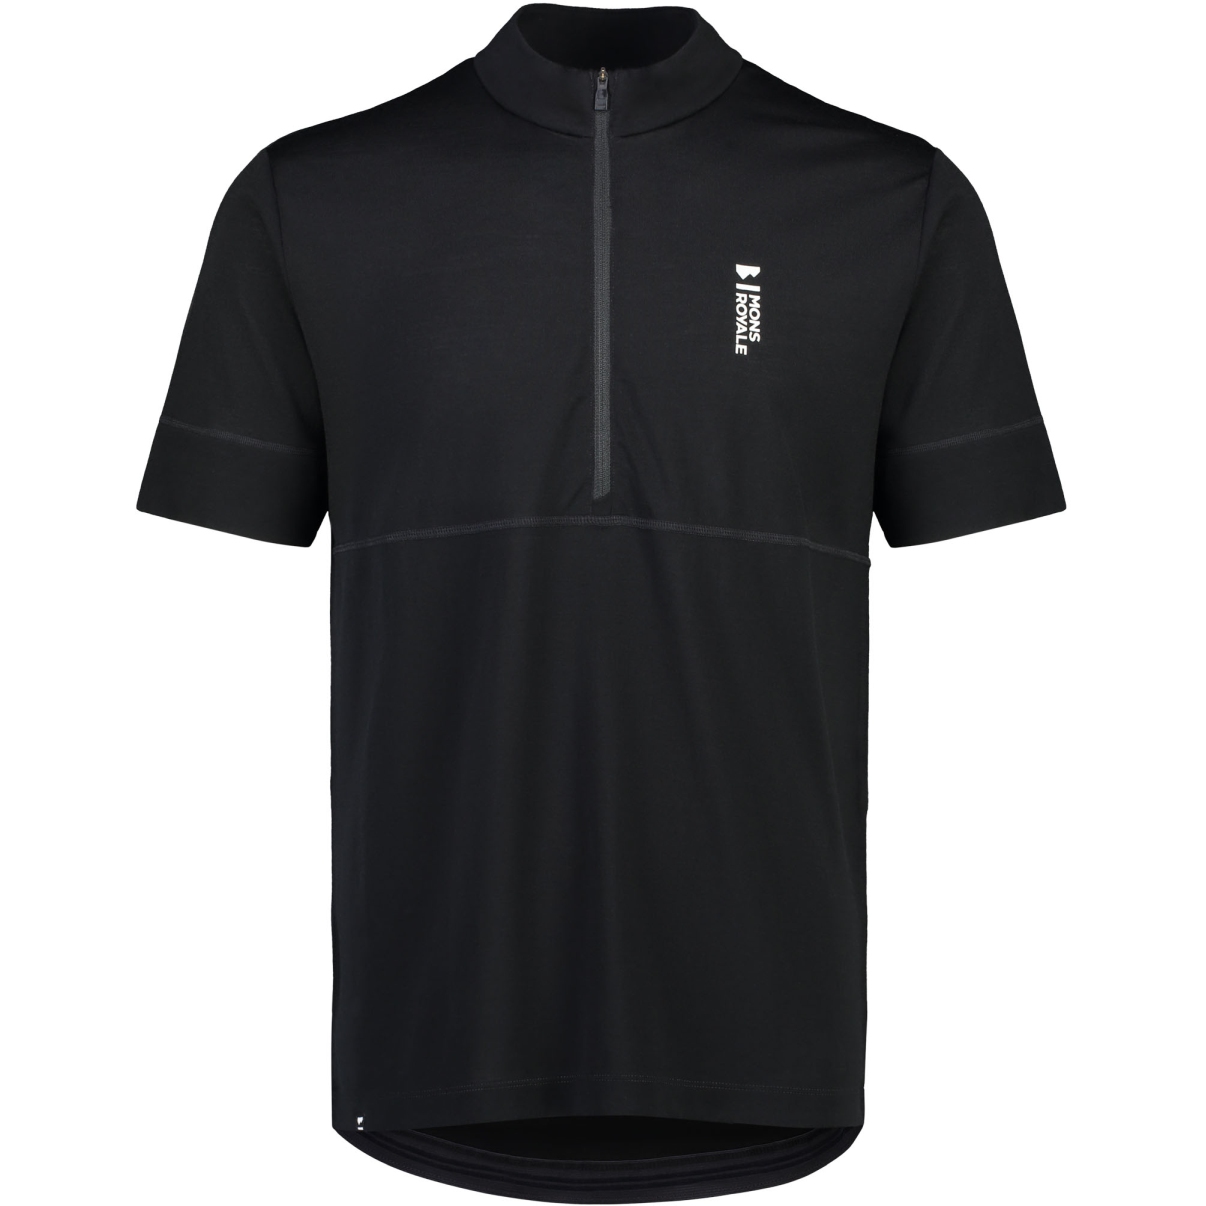 Produktbild von Mons Royale Cadence Merino Air-Con Half Zip T-Shirt Herren - schwarz